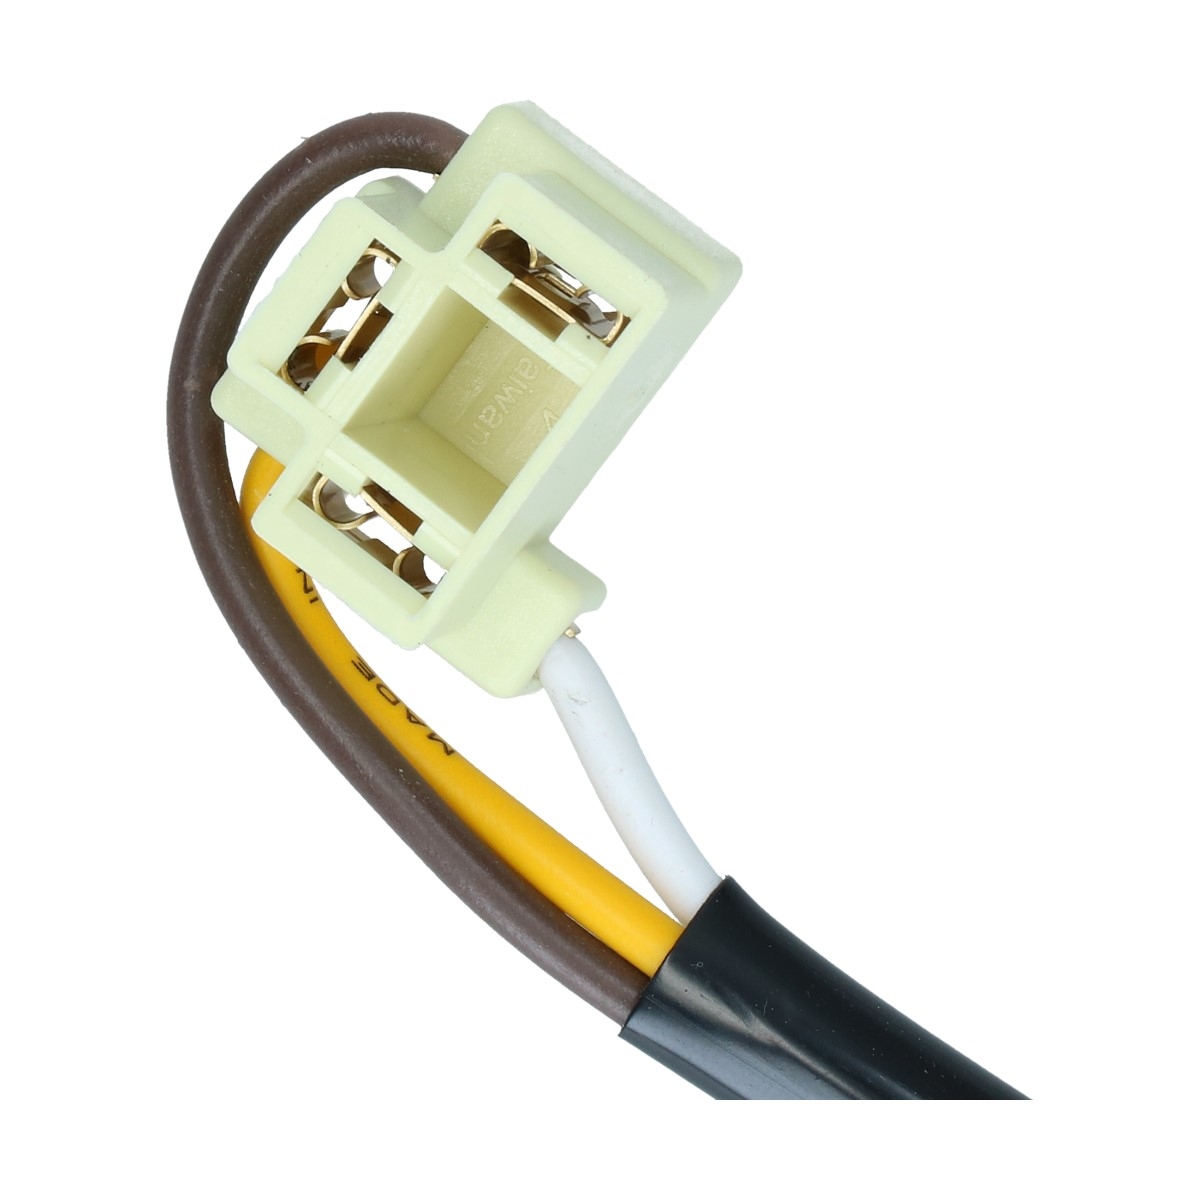 Koplamp connector (stekker) per stuk H4 (ca 25cm)